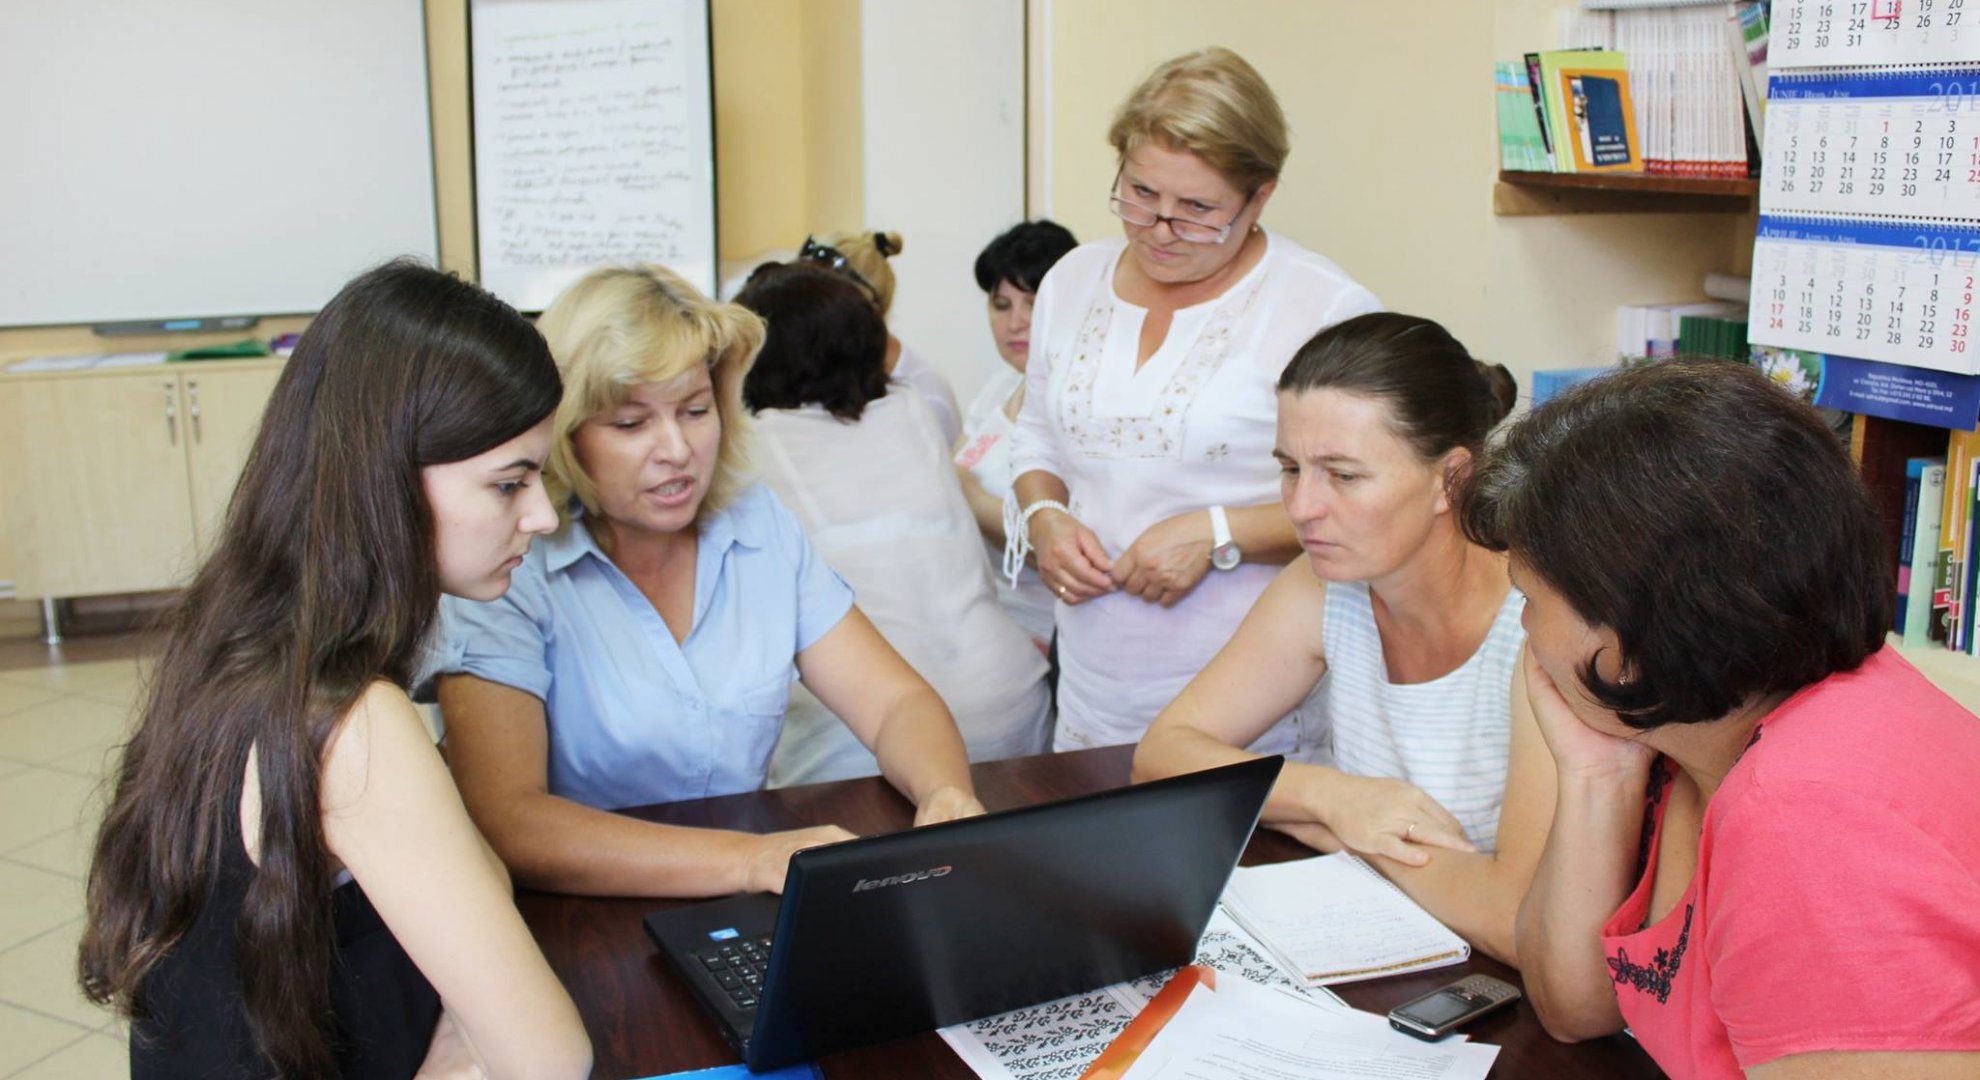 Îmbunătățirea accesului la educație pentru adulții din mediul rural, prin înființarea a 6 Centre Comunitare de Educaţie a Adulţilor în regiunea de sud a Republicii Moldova